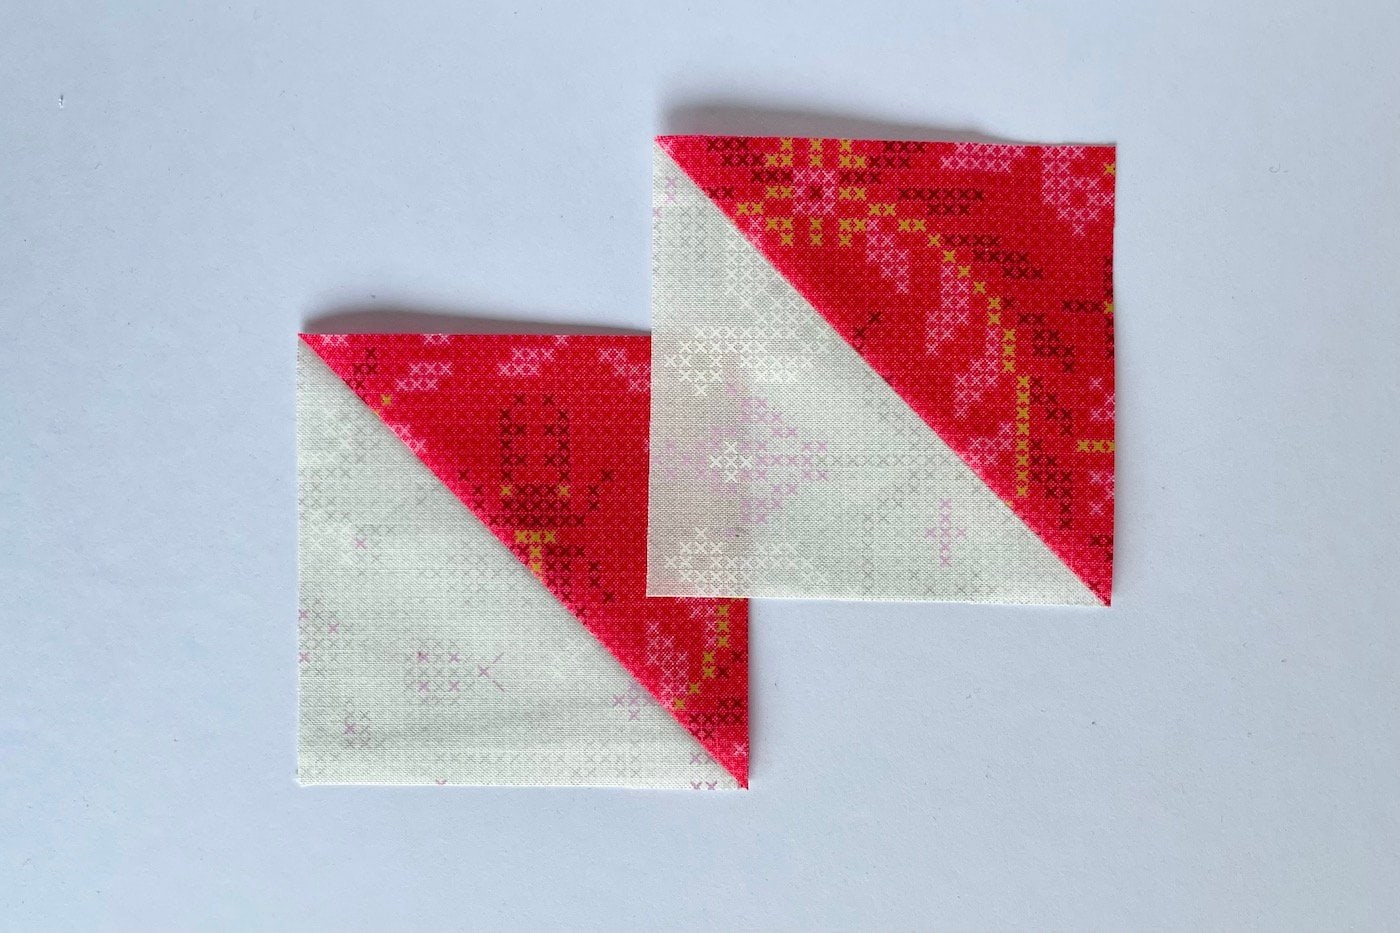 tissu rose et rouge sur table blanche